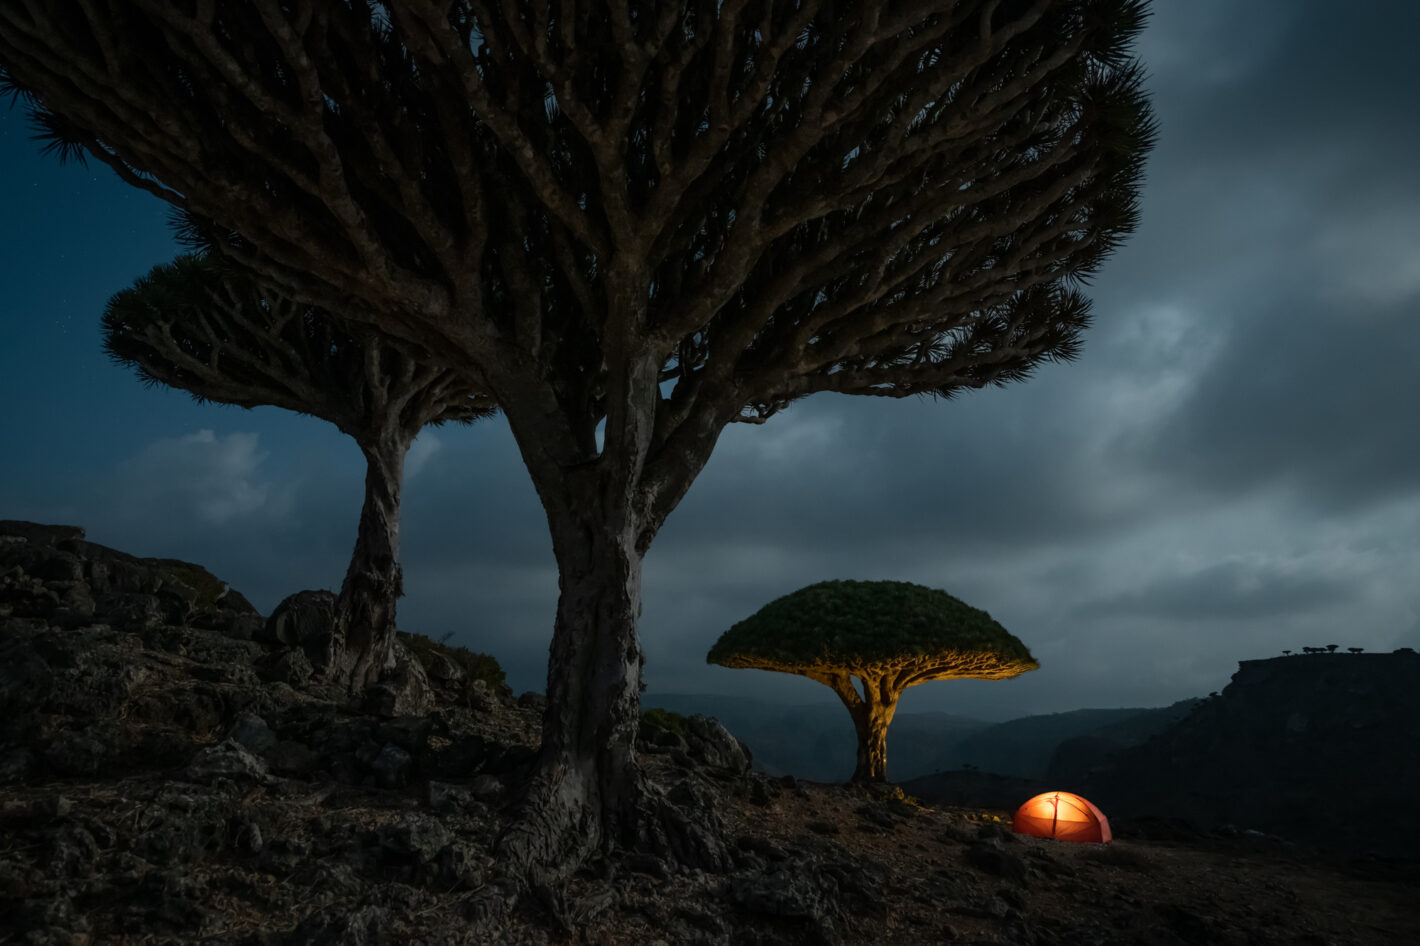 Dragonnier de Socotra : sur les traces de Marsel van Oosten